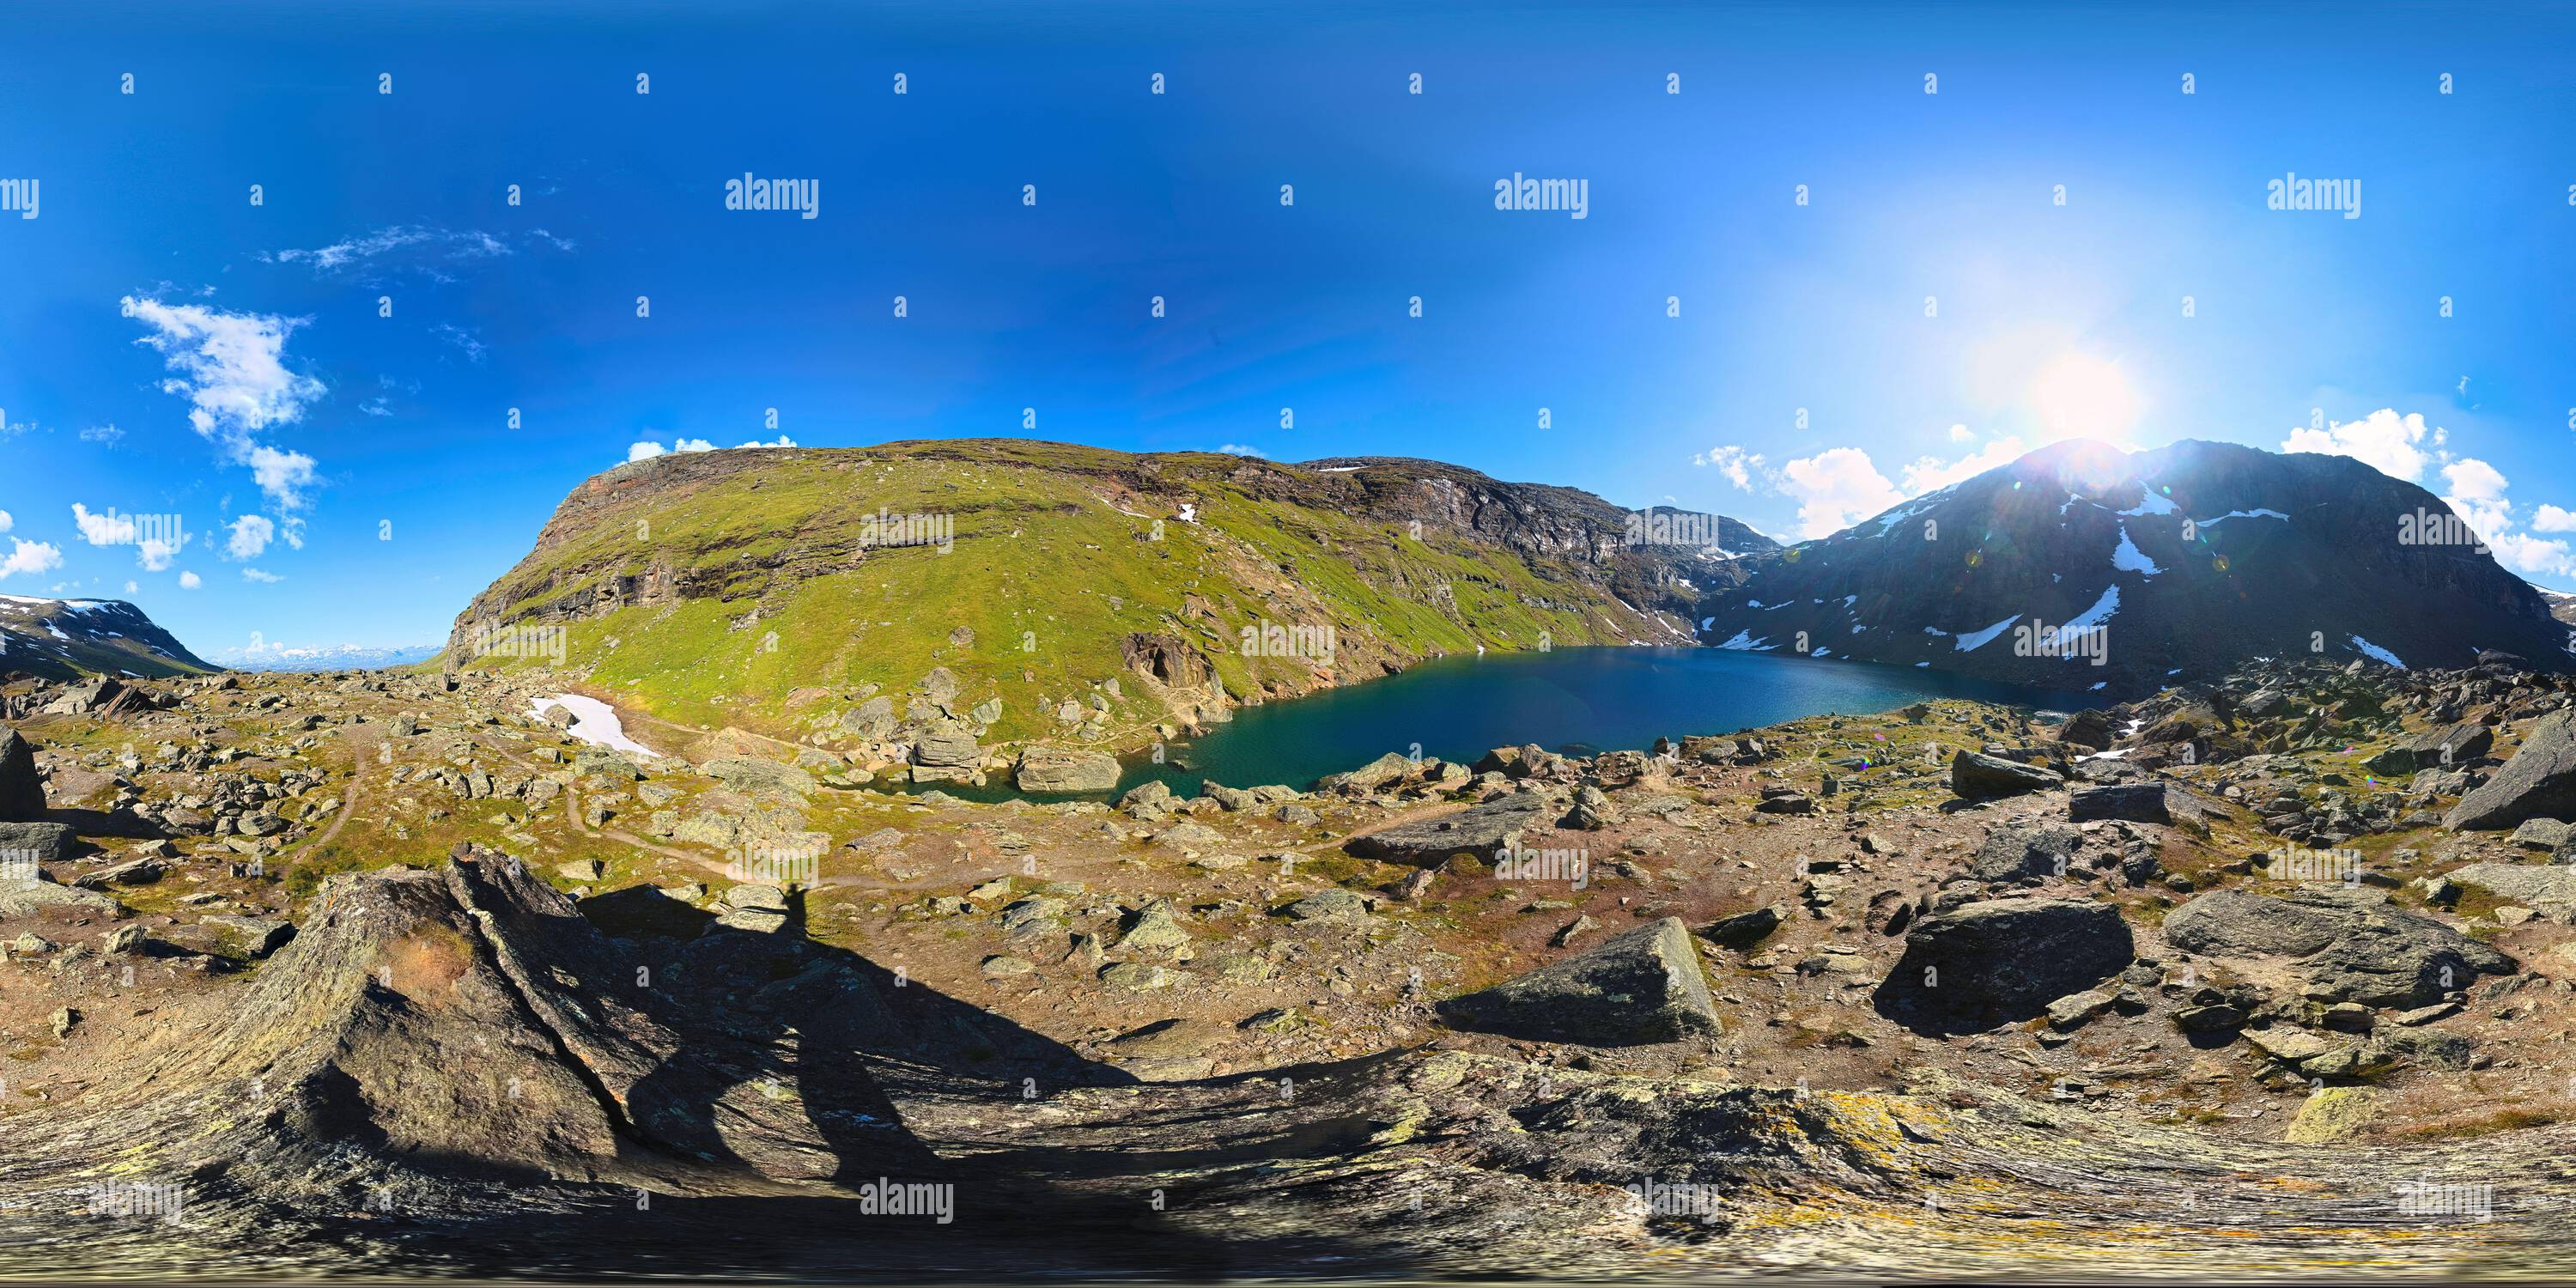 Vue panoramique à 360° de Panorama sphérique du lac Trollsjon dans la vallée de Karkevagge, Norrbotten, Suède. Une projection équirectangulaire est utilisée.